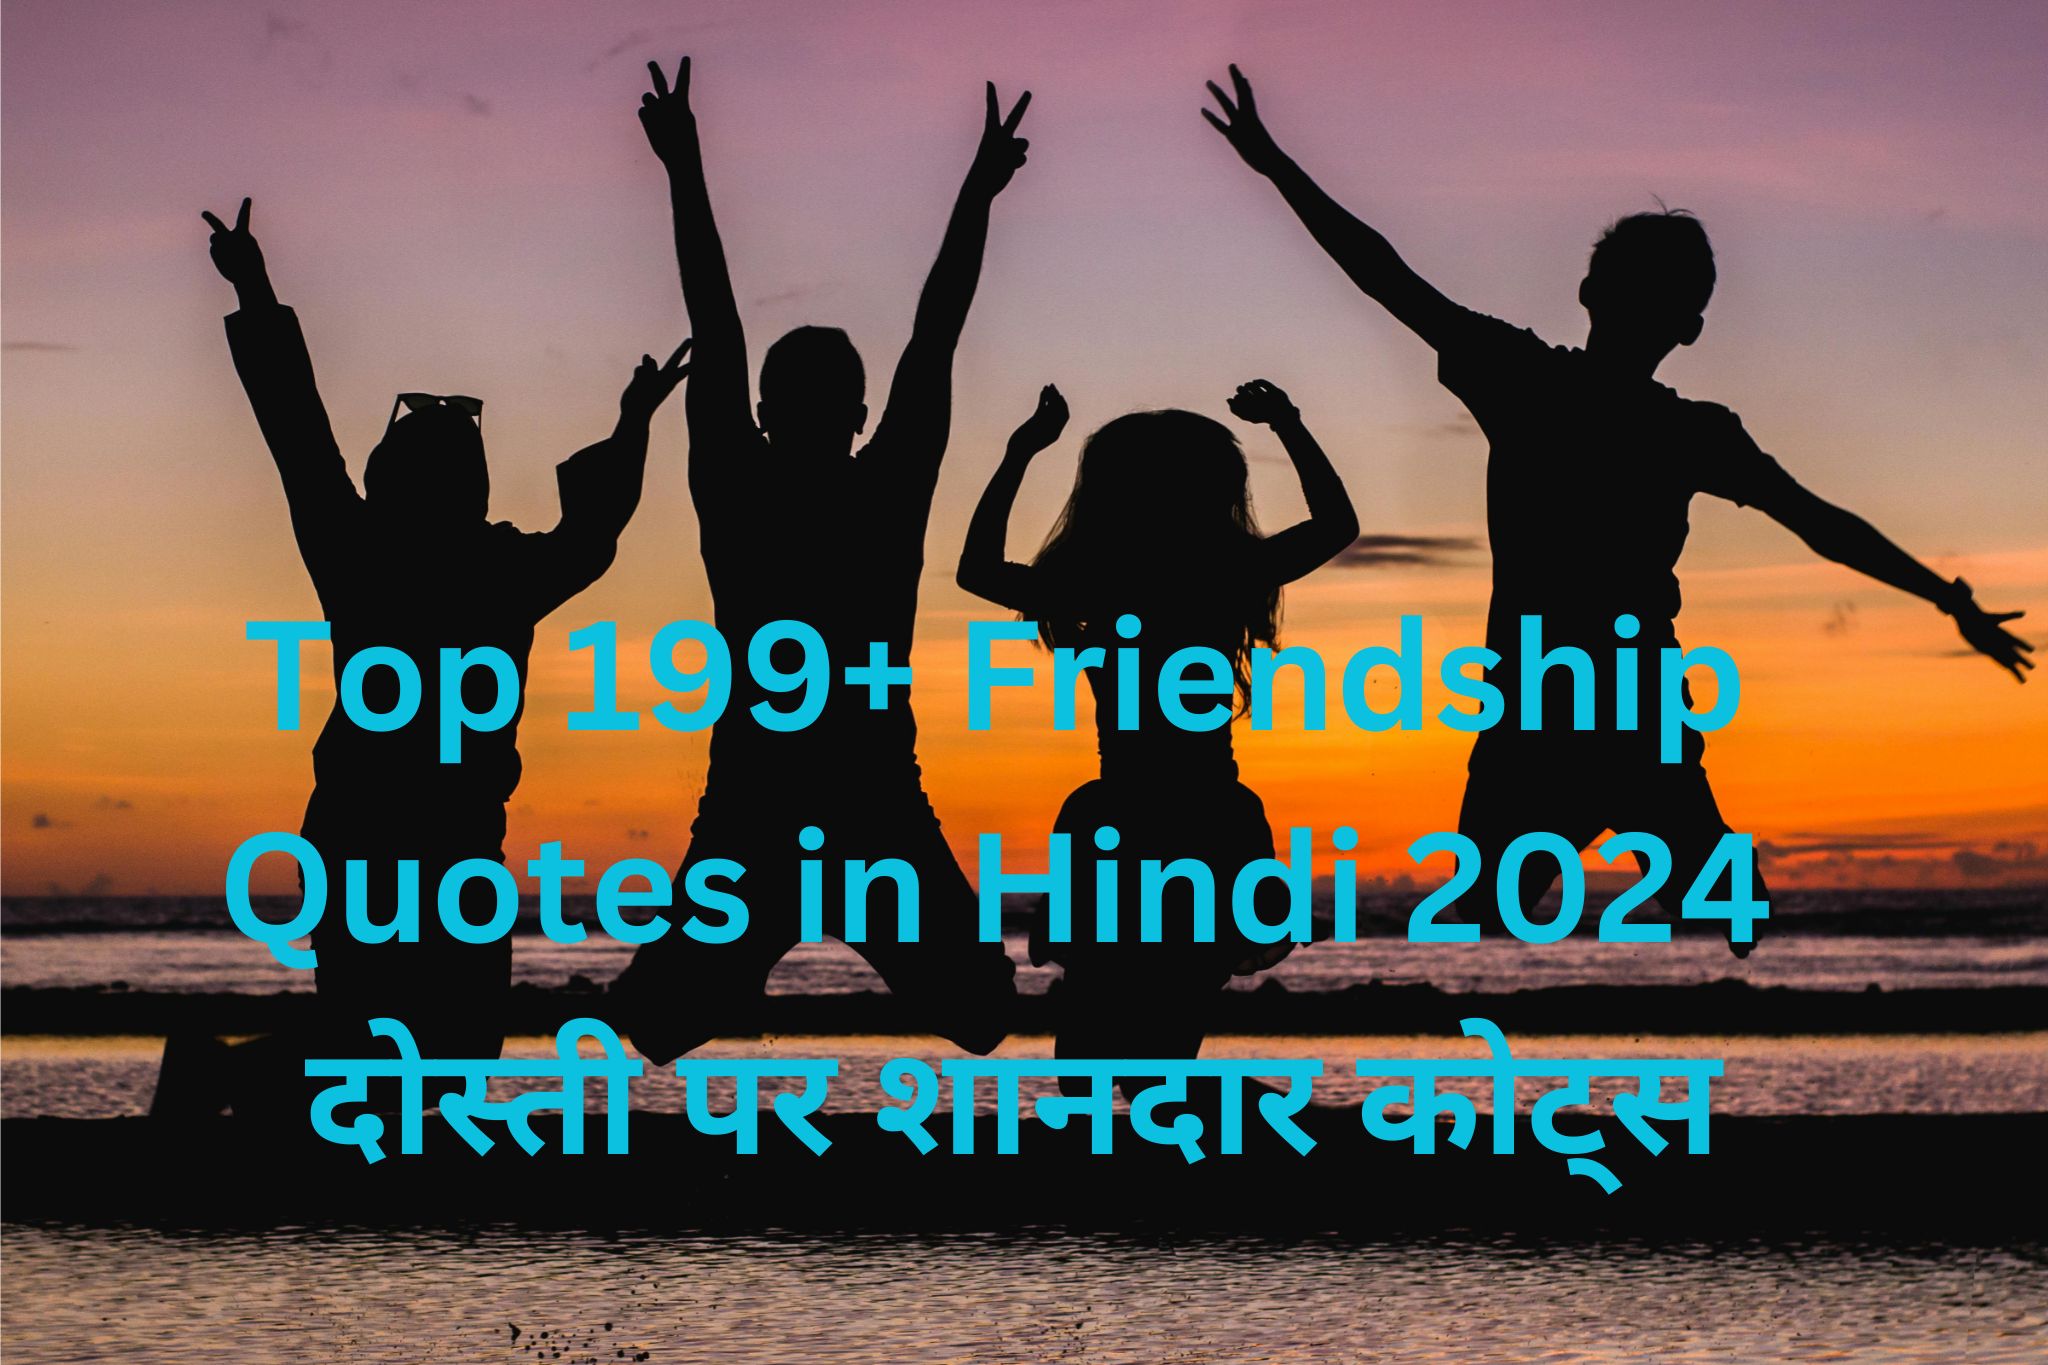 Top 199+ Friendship Quotes in Hindi 2024 दोस्ती पर शानदार कोट्स